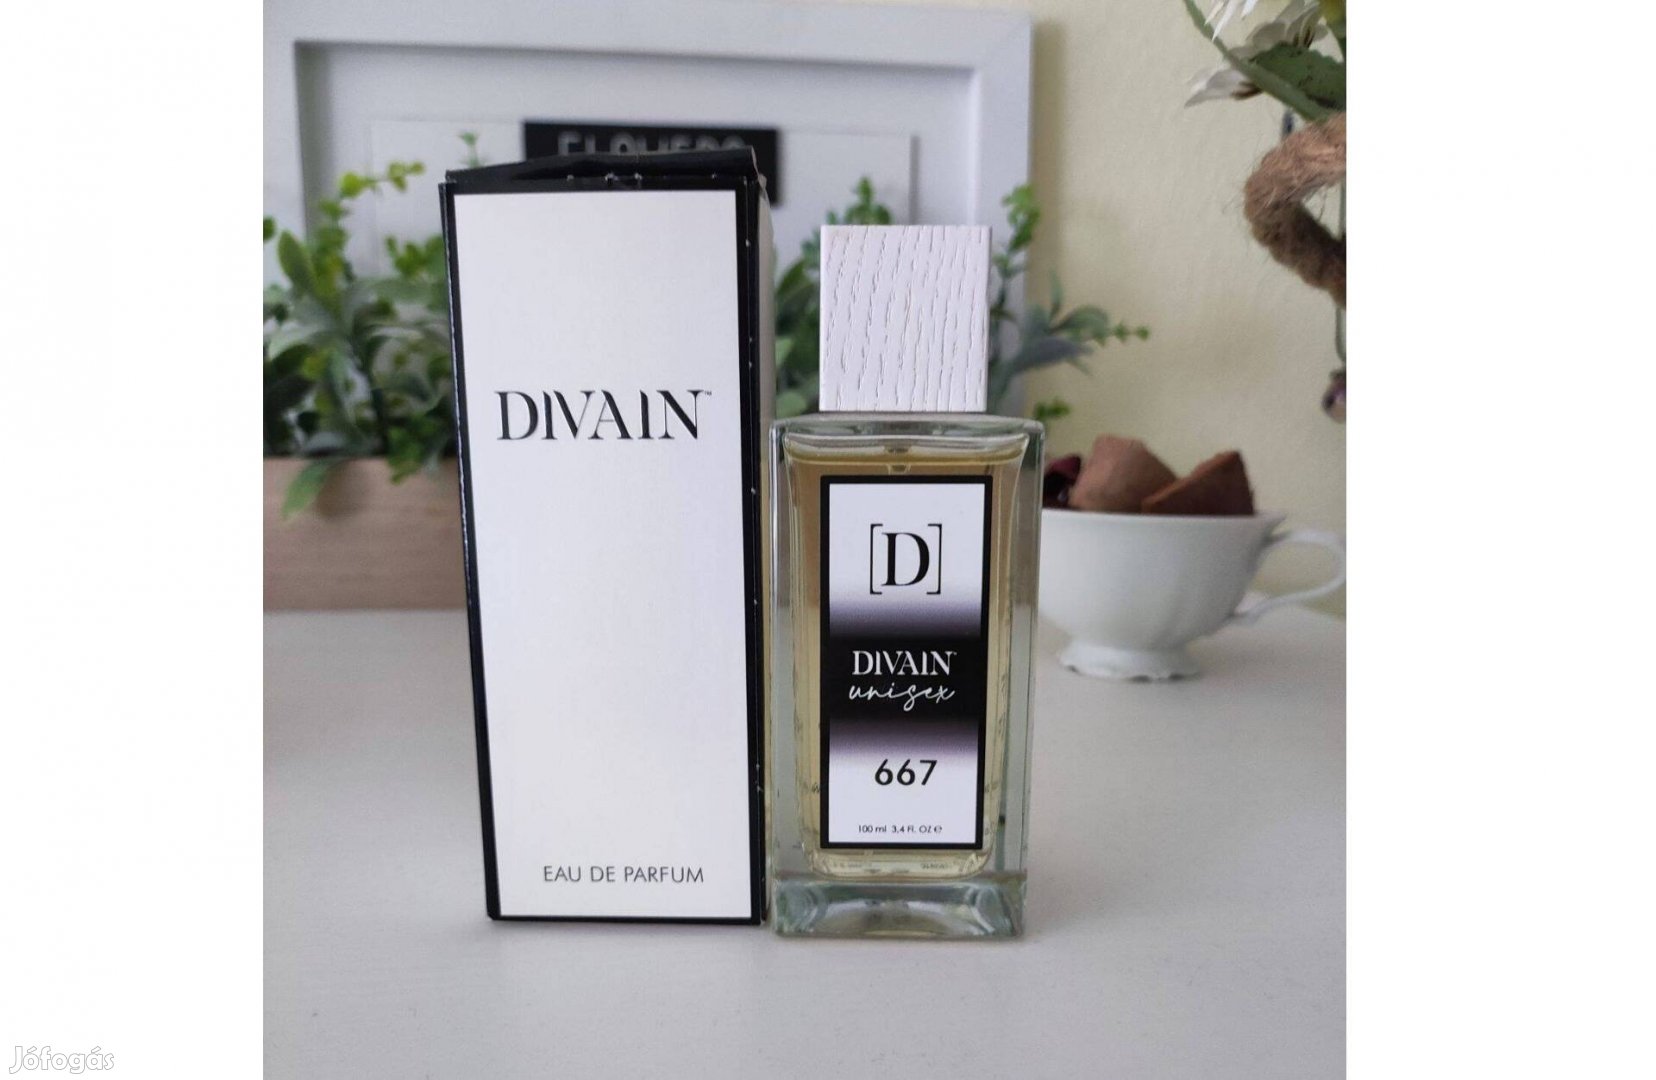 Divain Unisex 667 parfüm